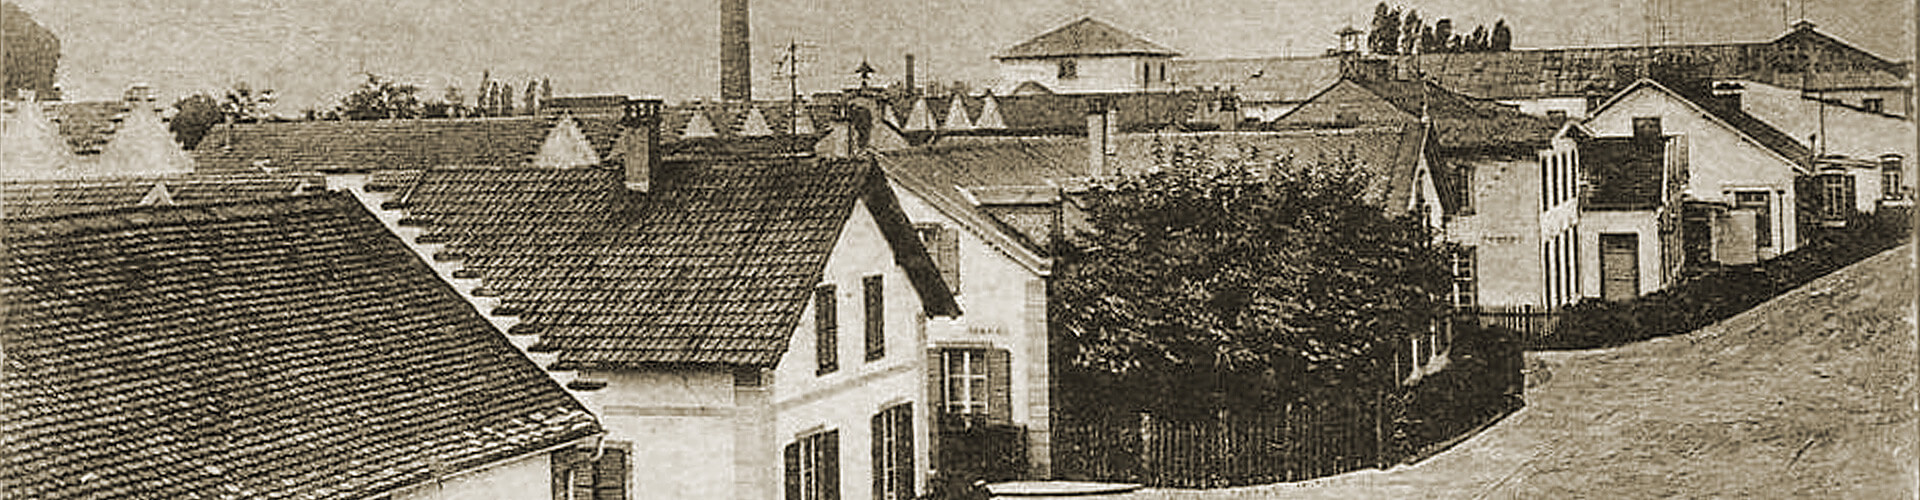 Wursters neue Papiermanunfaktur in der Ruprechtsau, um 1875